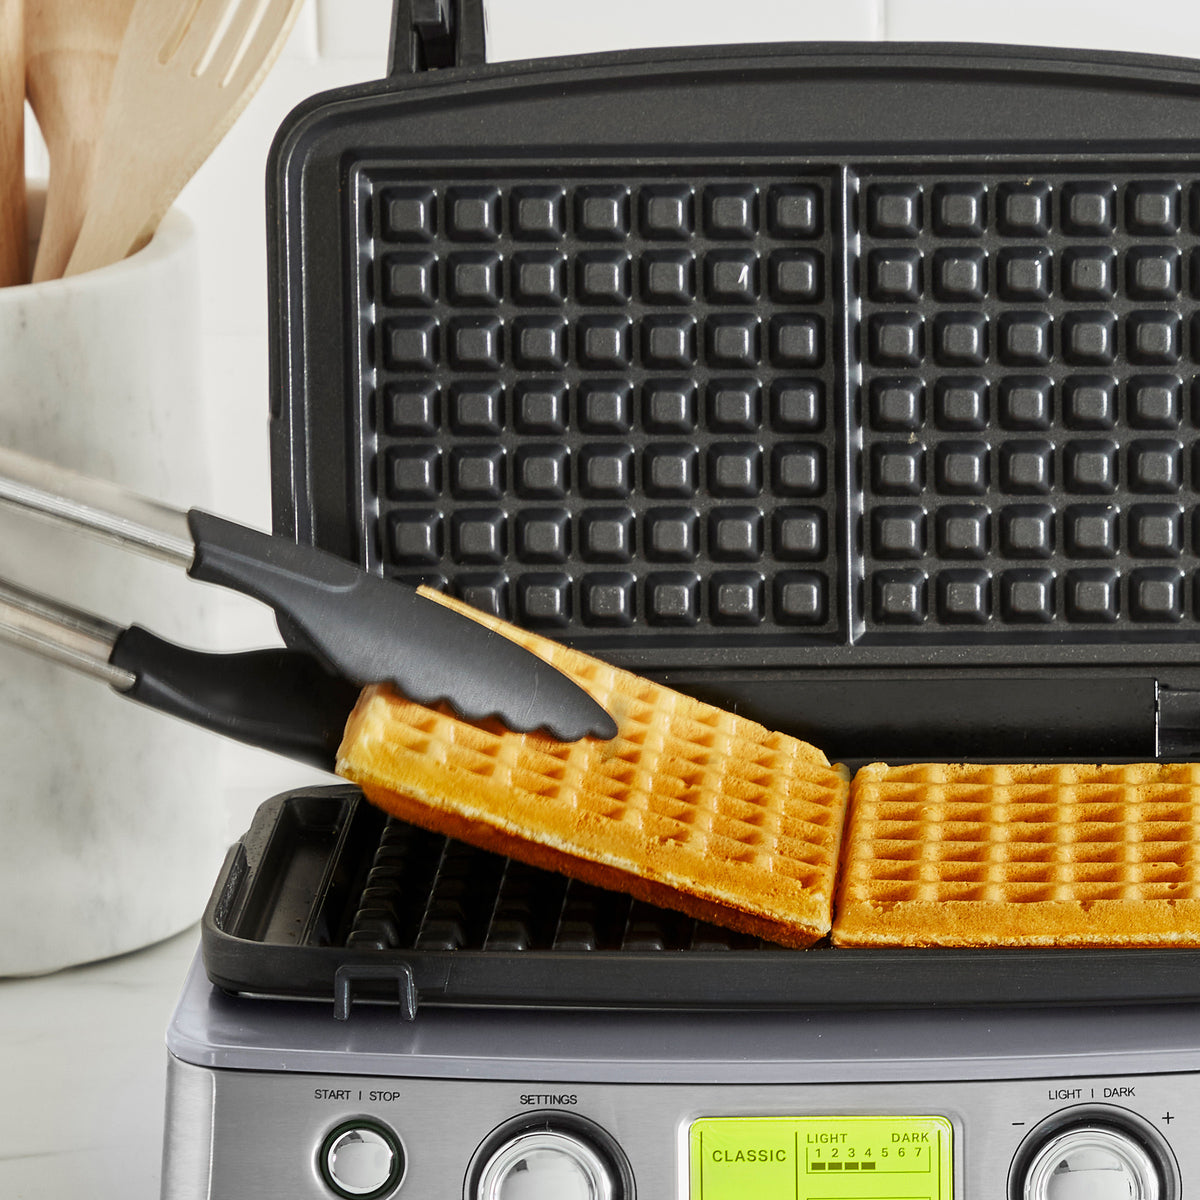 the Smart Waffle™ Pro 4 Slice